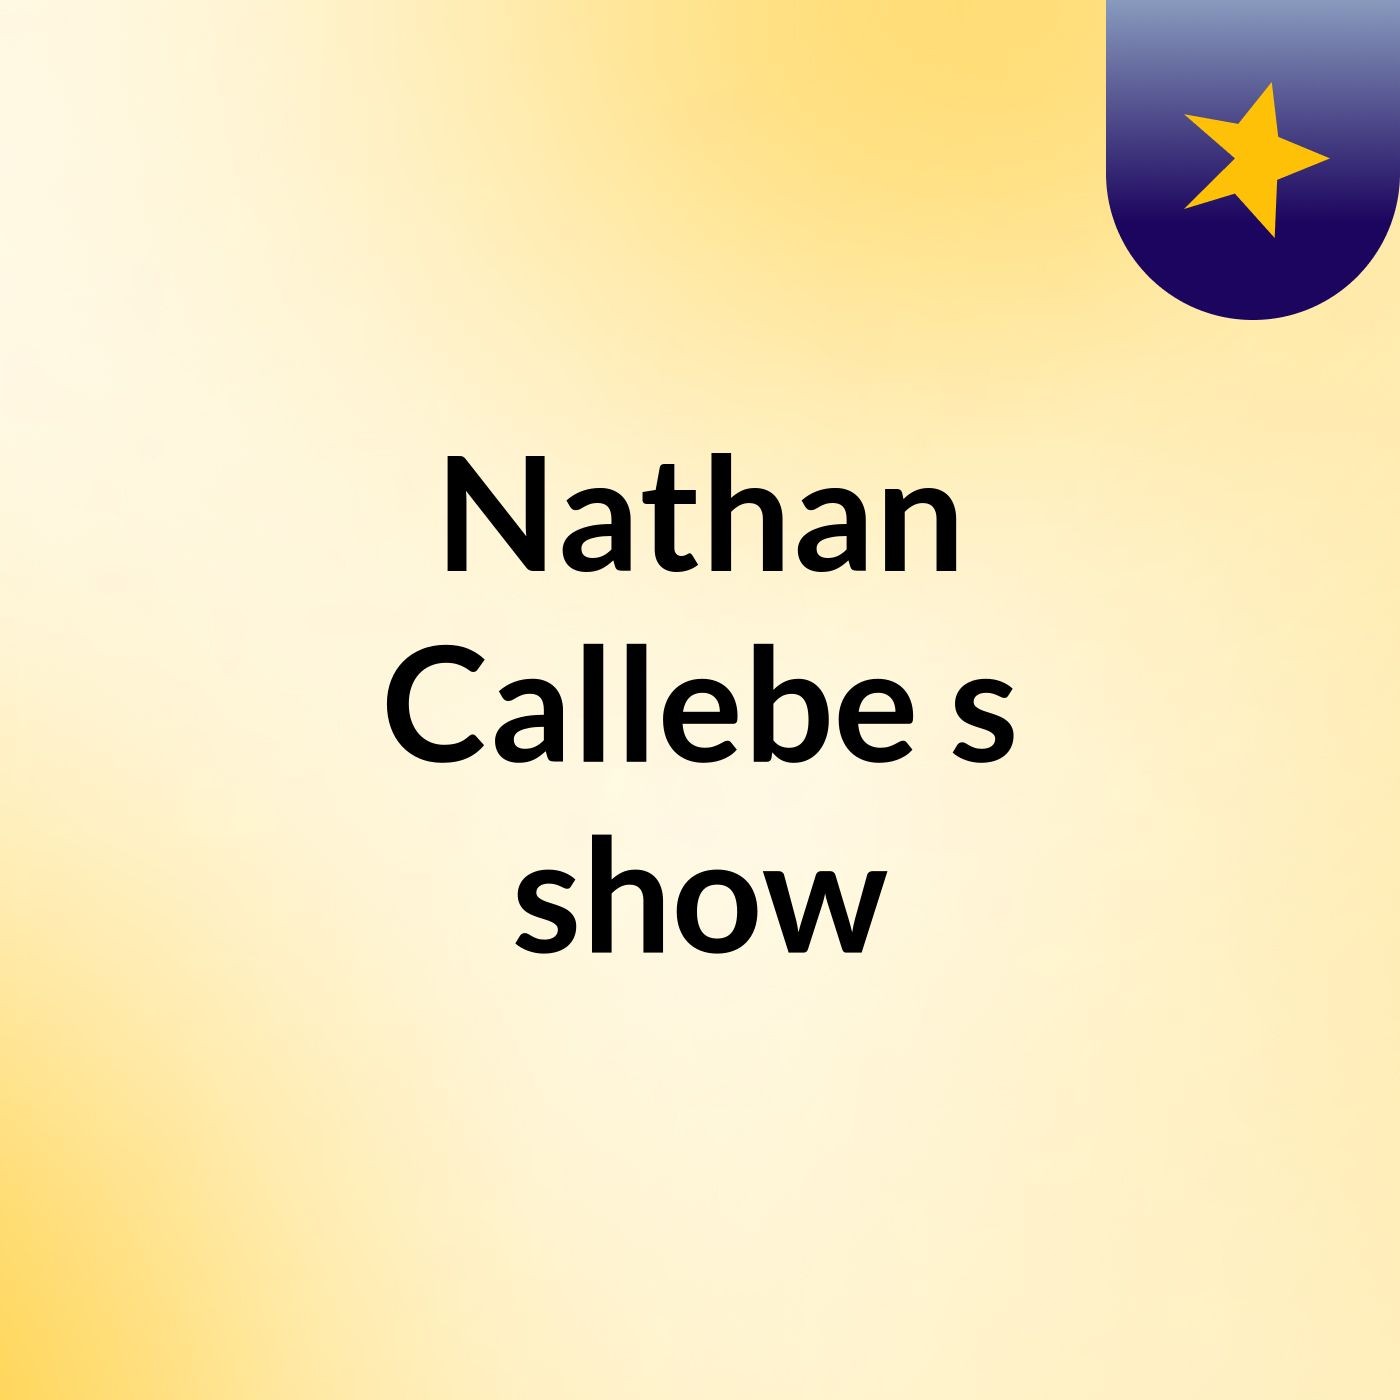 Nathan Callebe's show